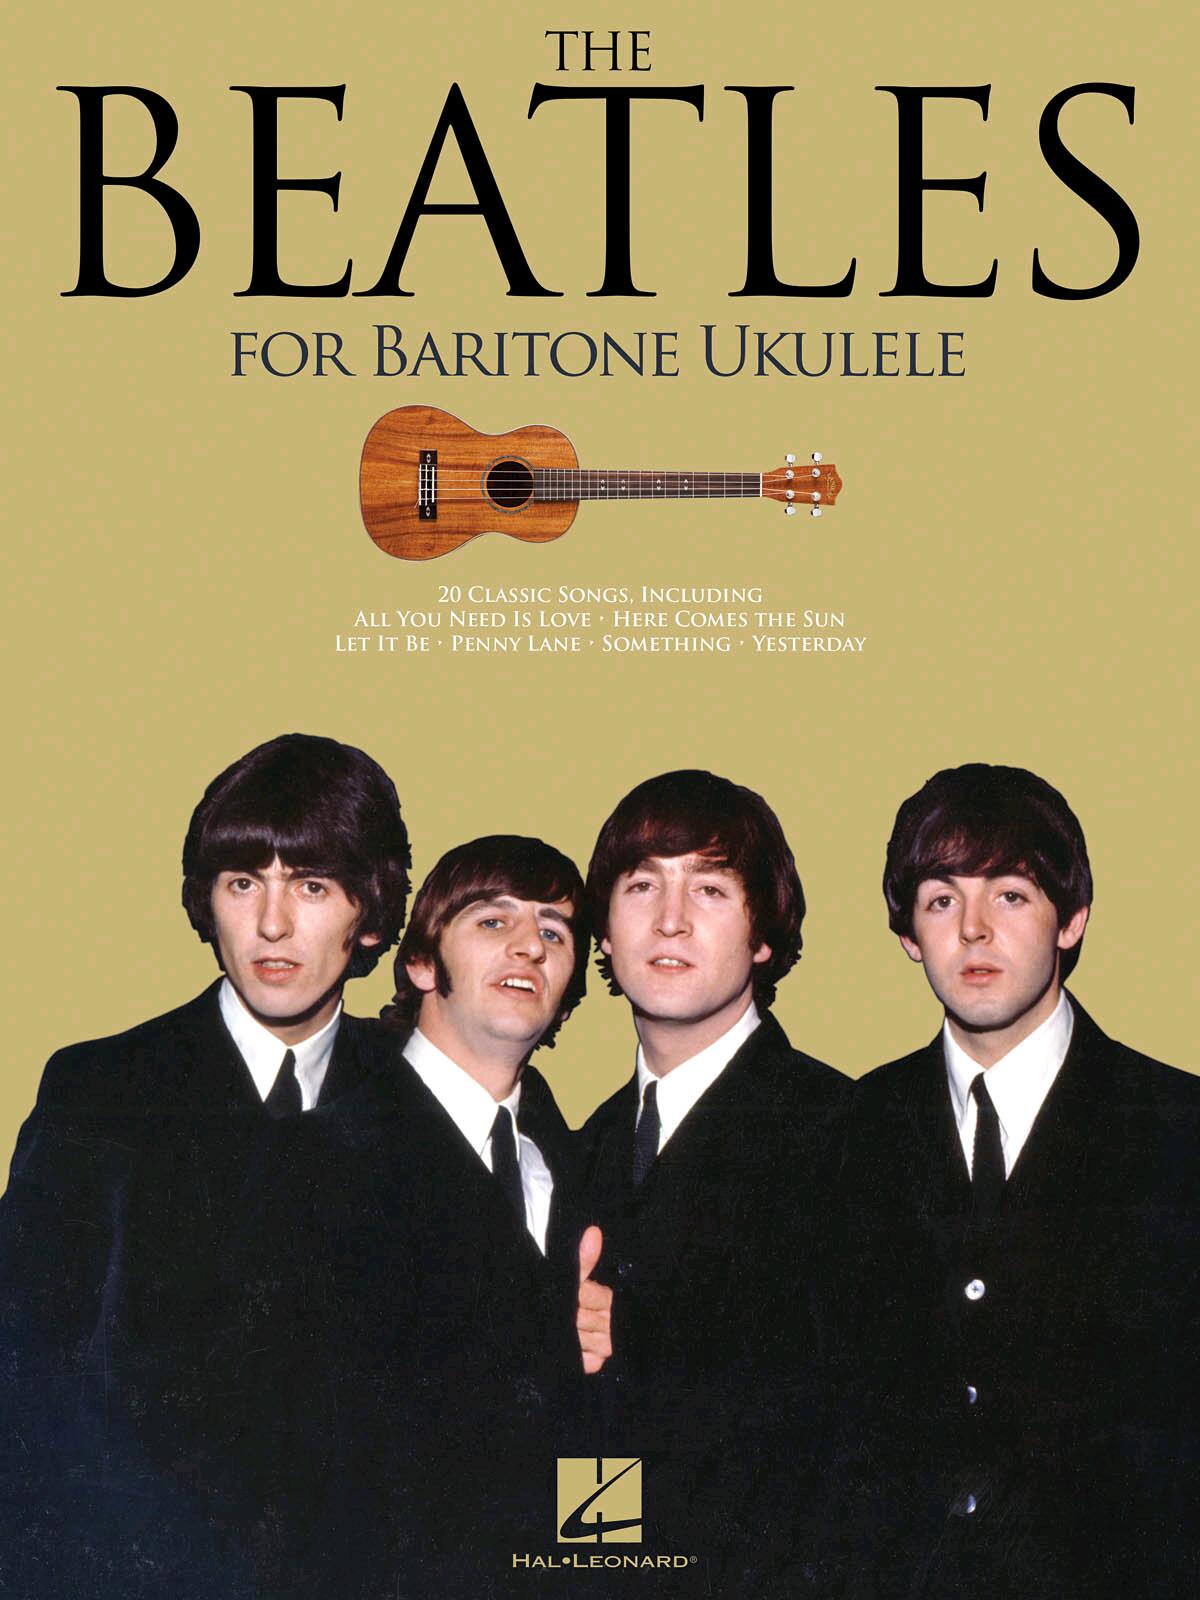 The Beatles For Baritone Ukulele : photo 1